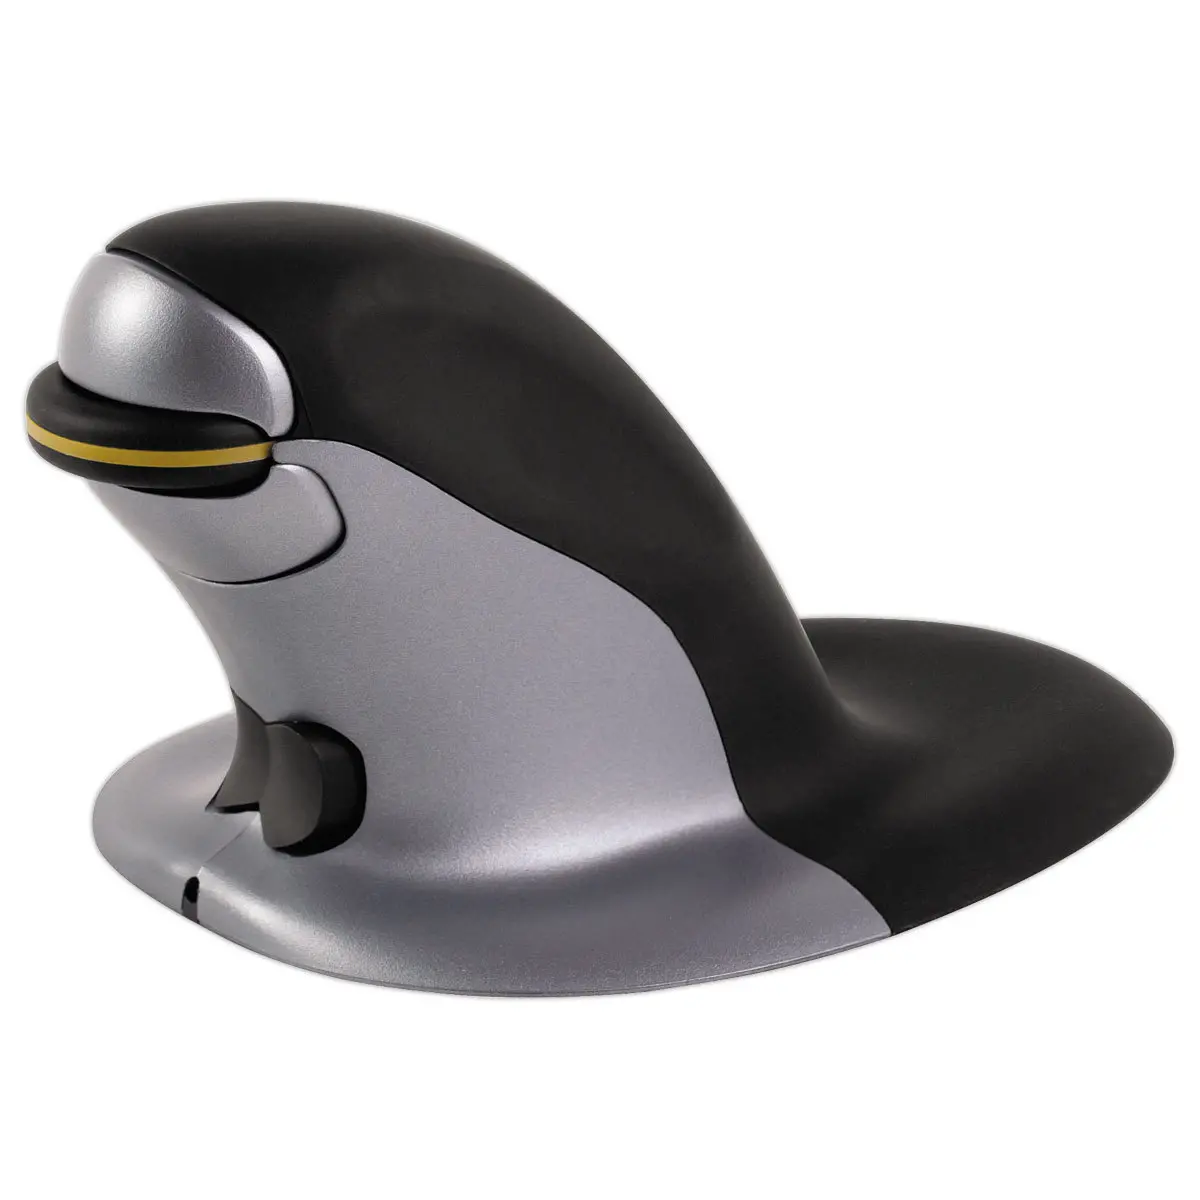 Souris ergonomique sans fil penguin modèle moyen - Souris